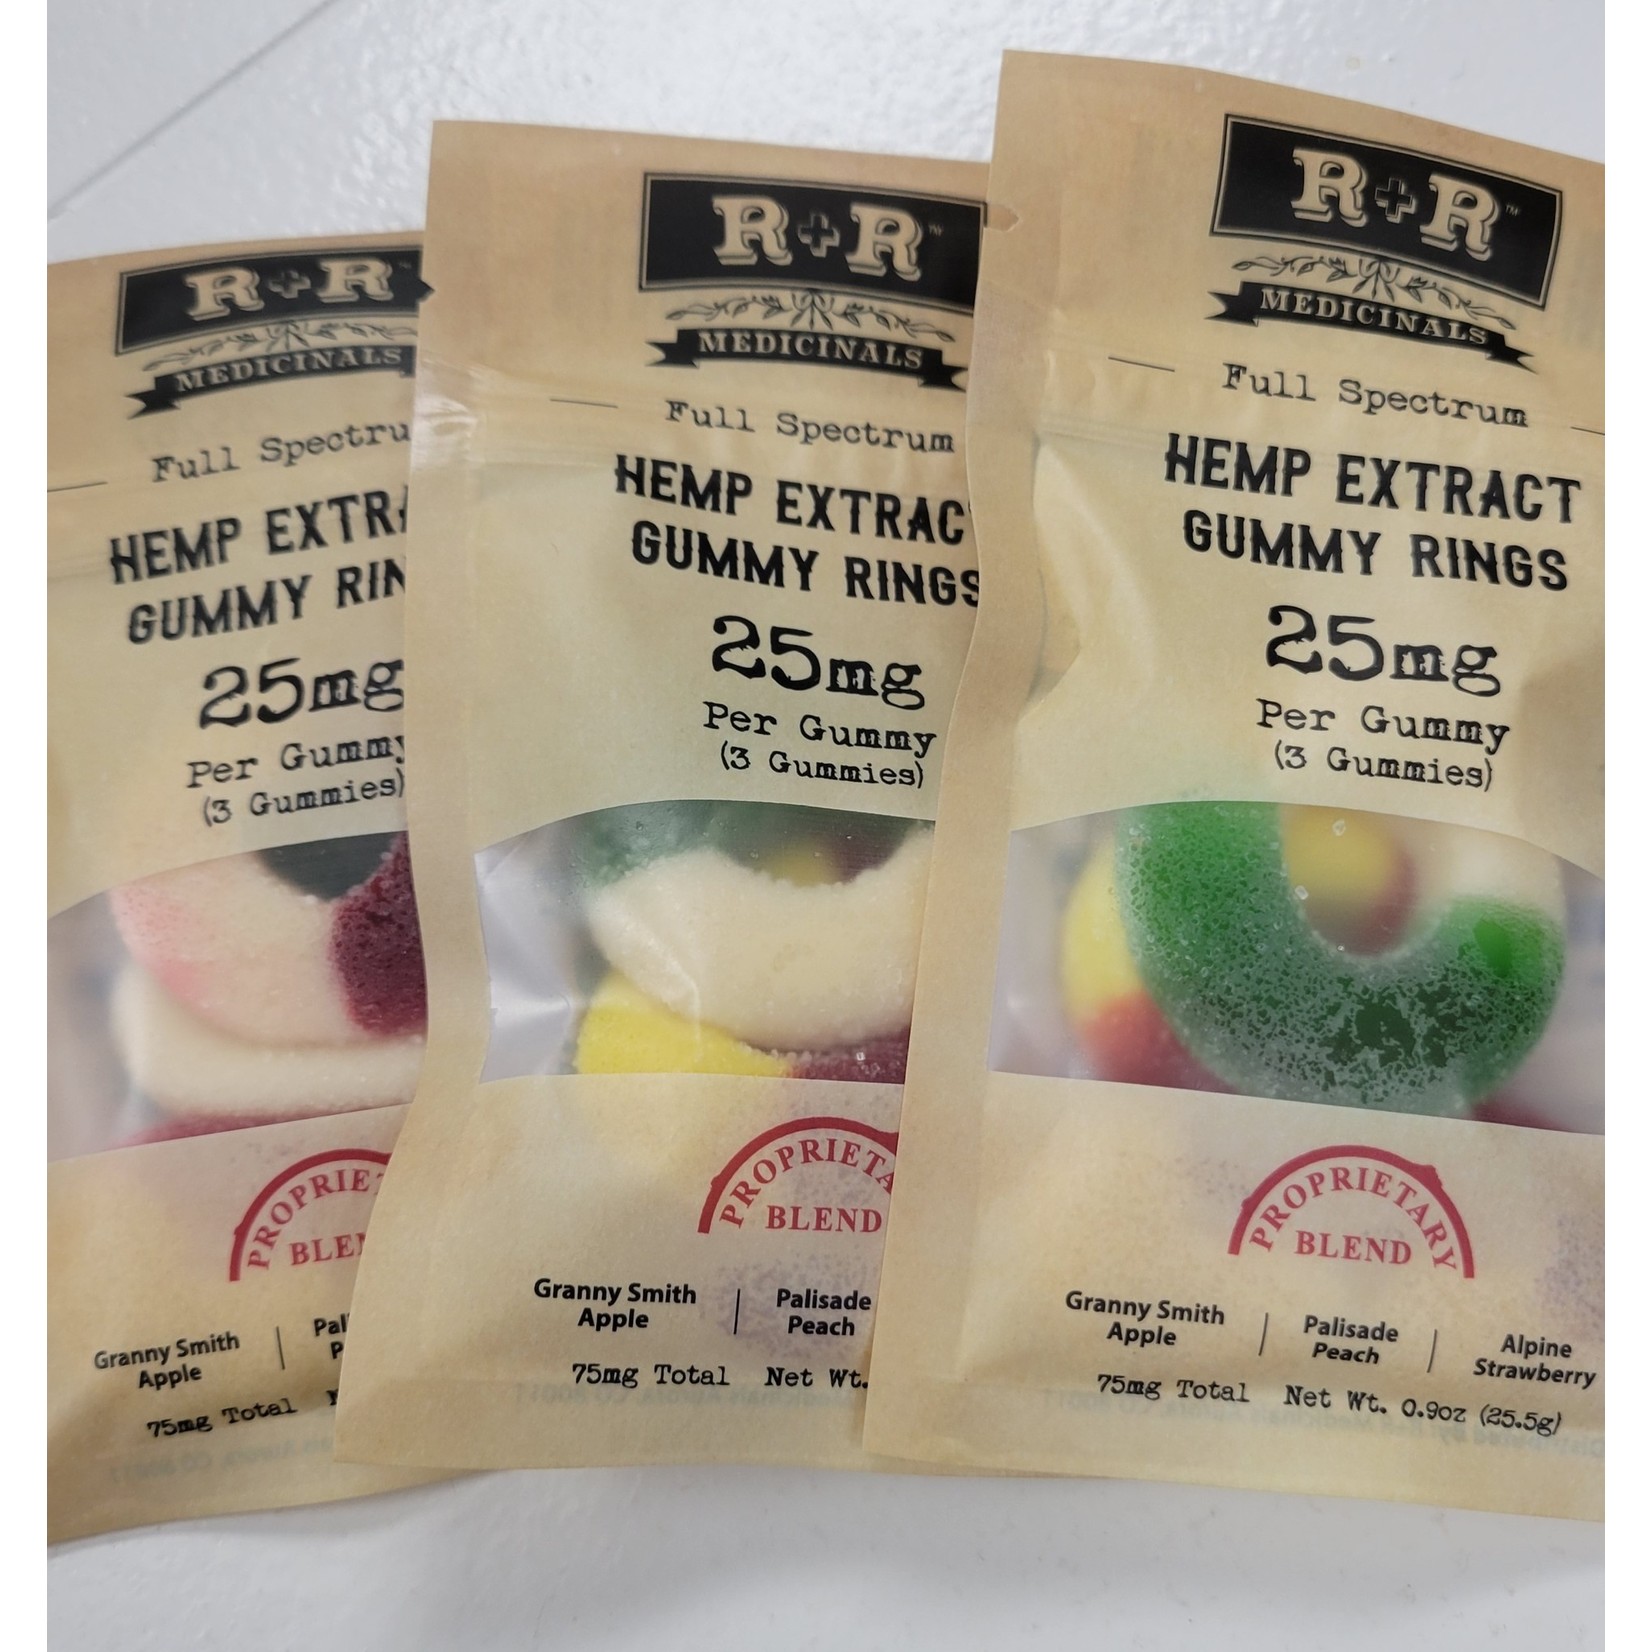 R&R Medicinals R & R Medicinals Full Spectrum Hemp Extract Gummies 25mg 3ct